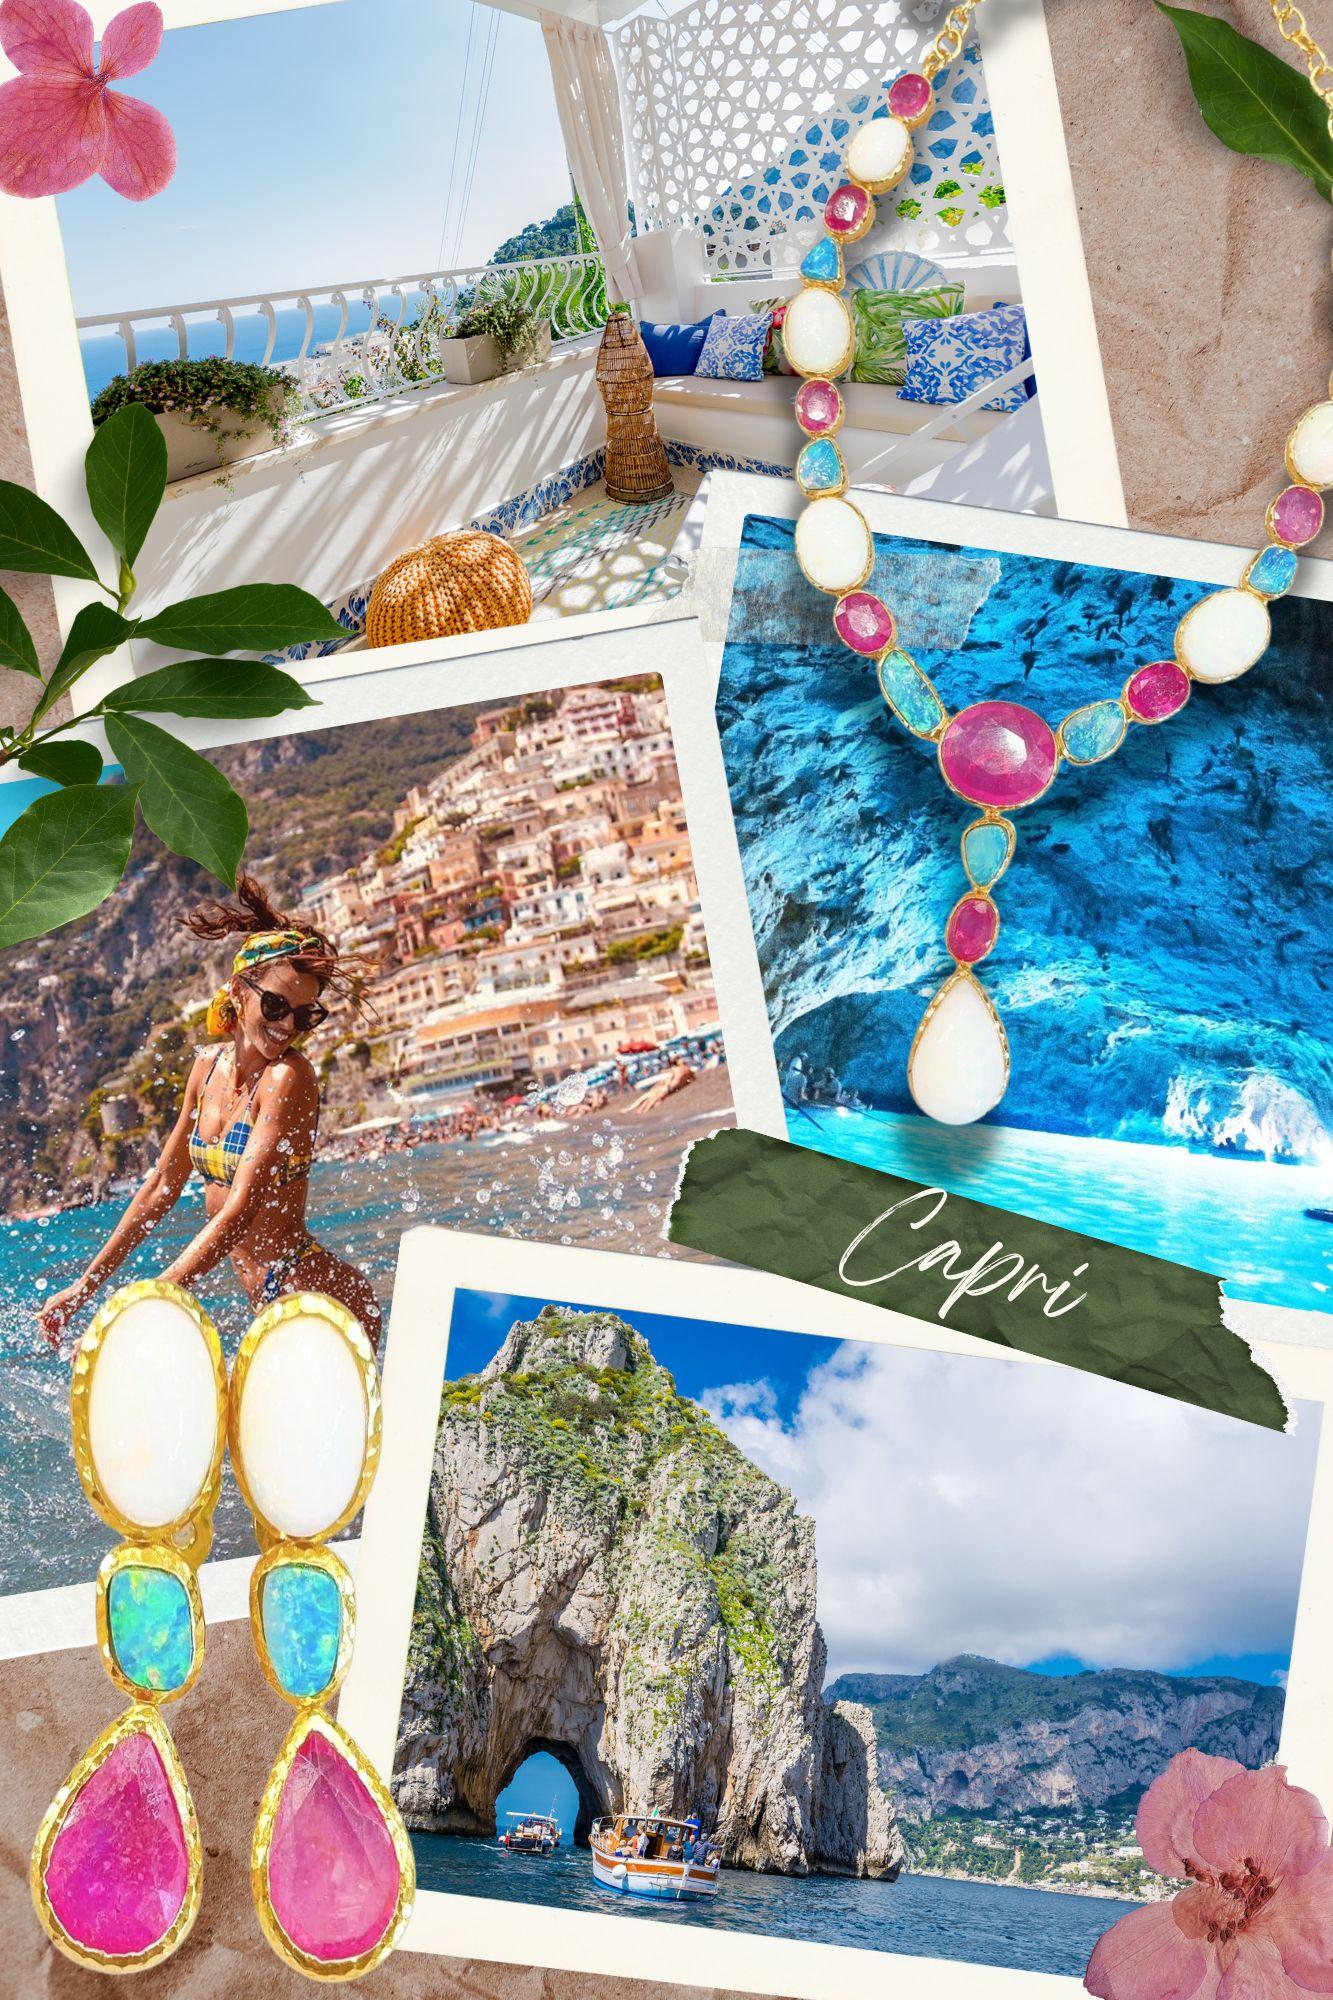 Bochic “Capri” Multi Natural Gem Bangle Set in 22k Gold & Silver For Sale 6